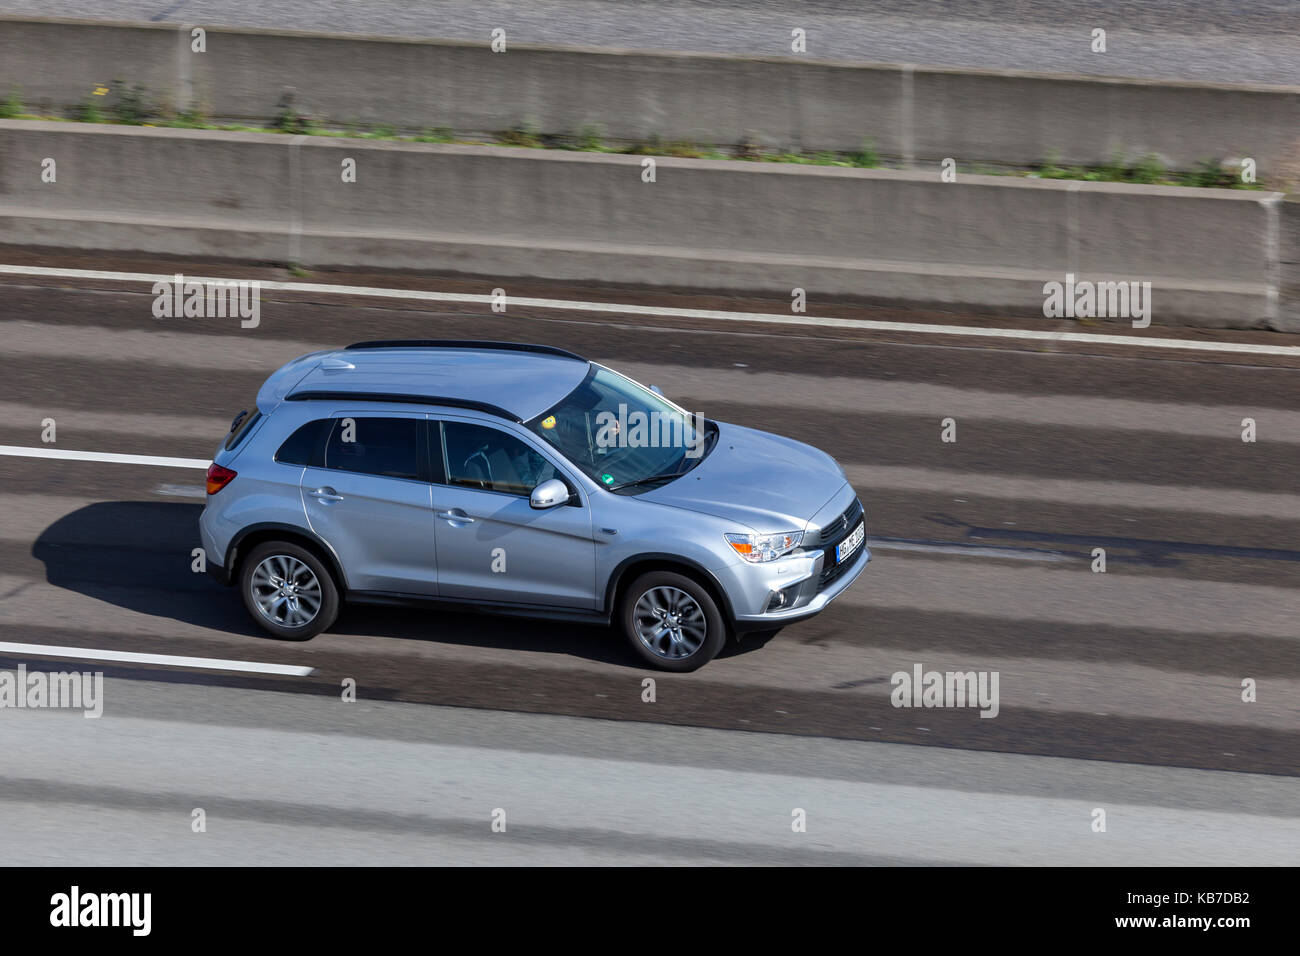 Francfort, Allemagne - Sep 19, 2017 : Mitsubishi asx compact crossover suv roulant sur l'autoroute en Allemagne Banque D'Images